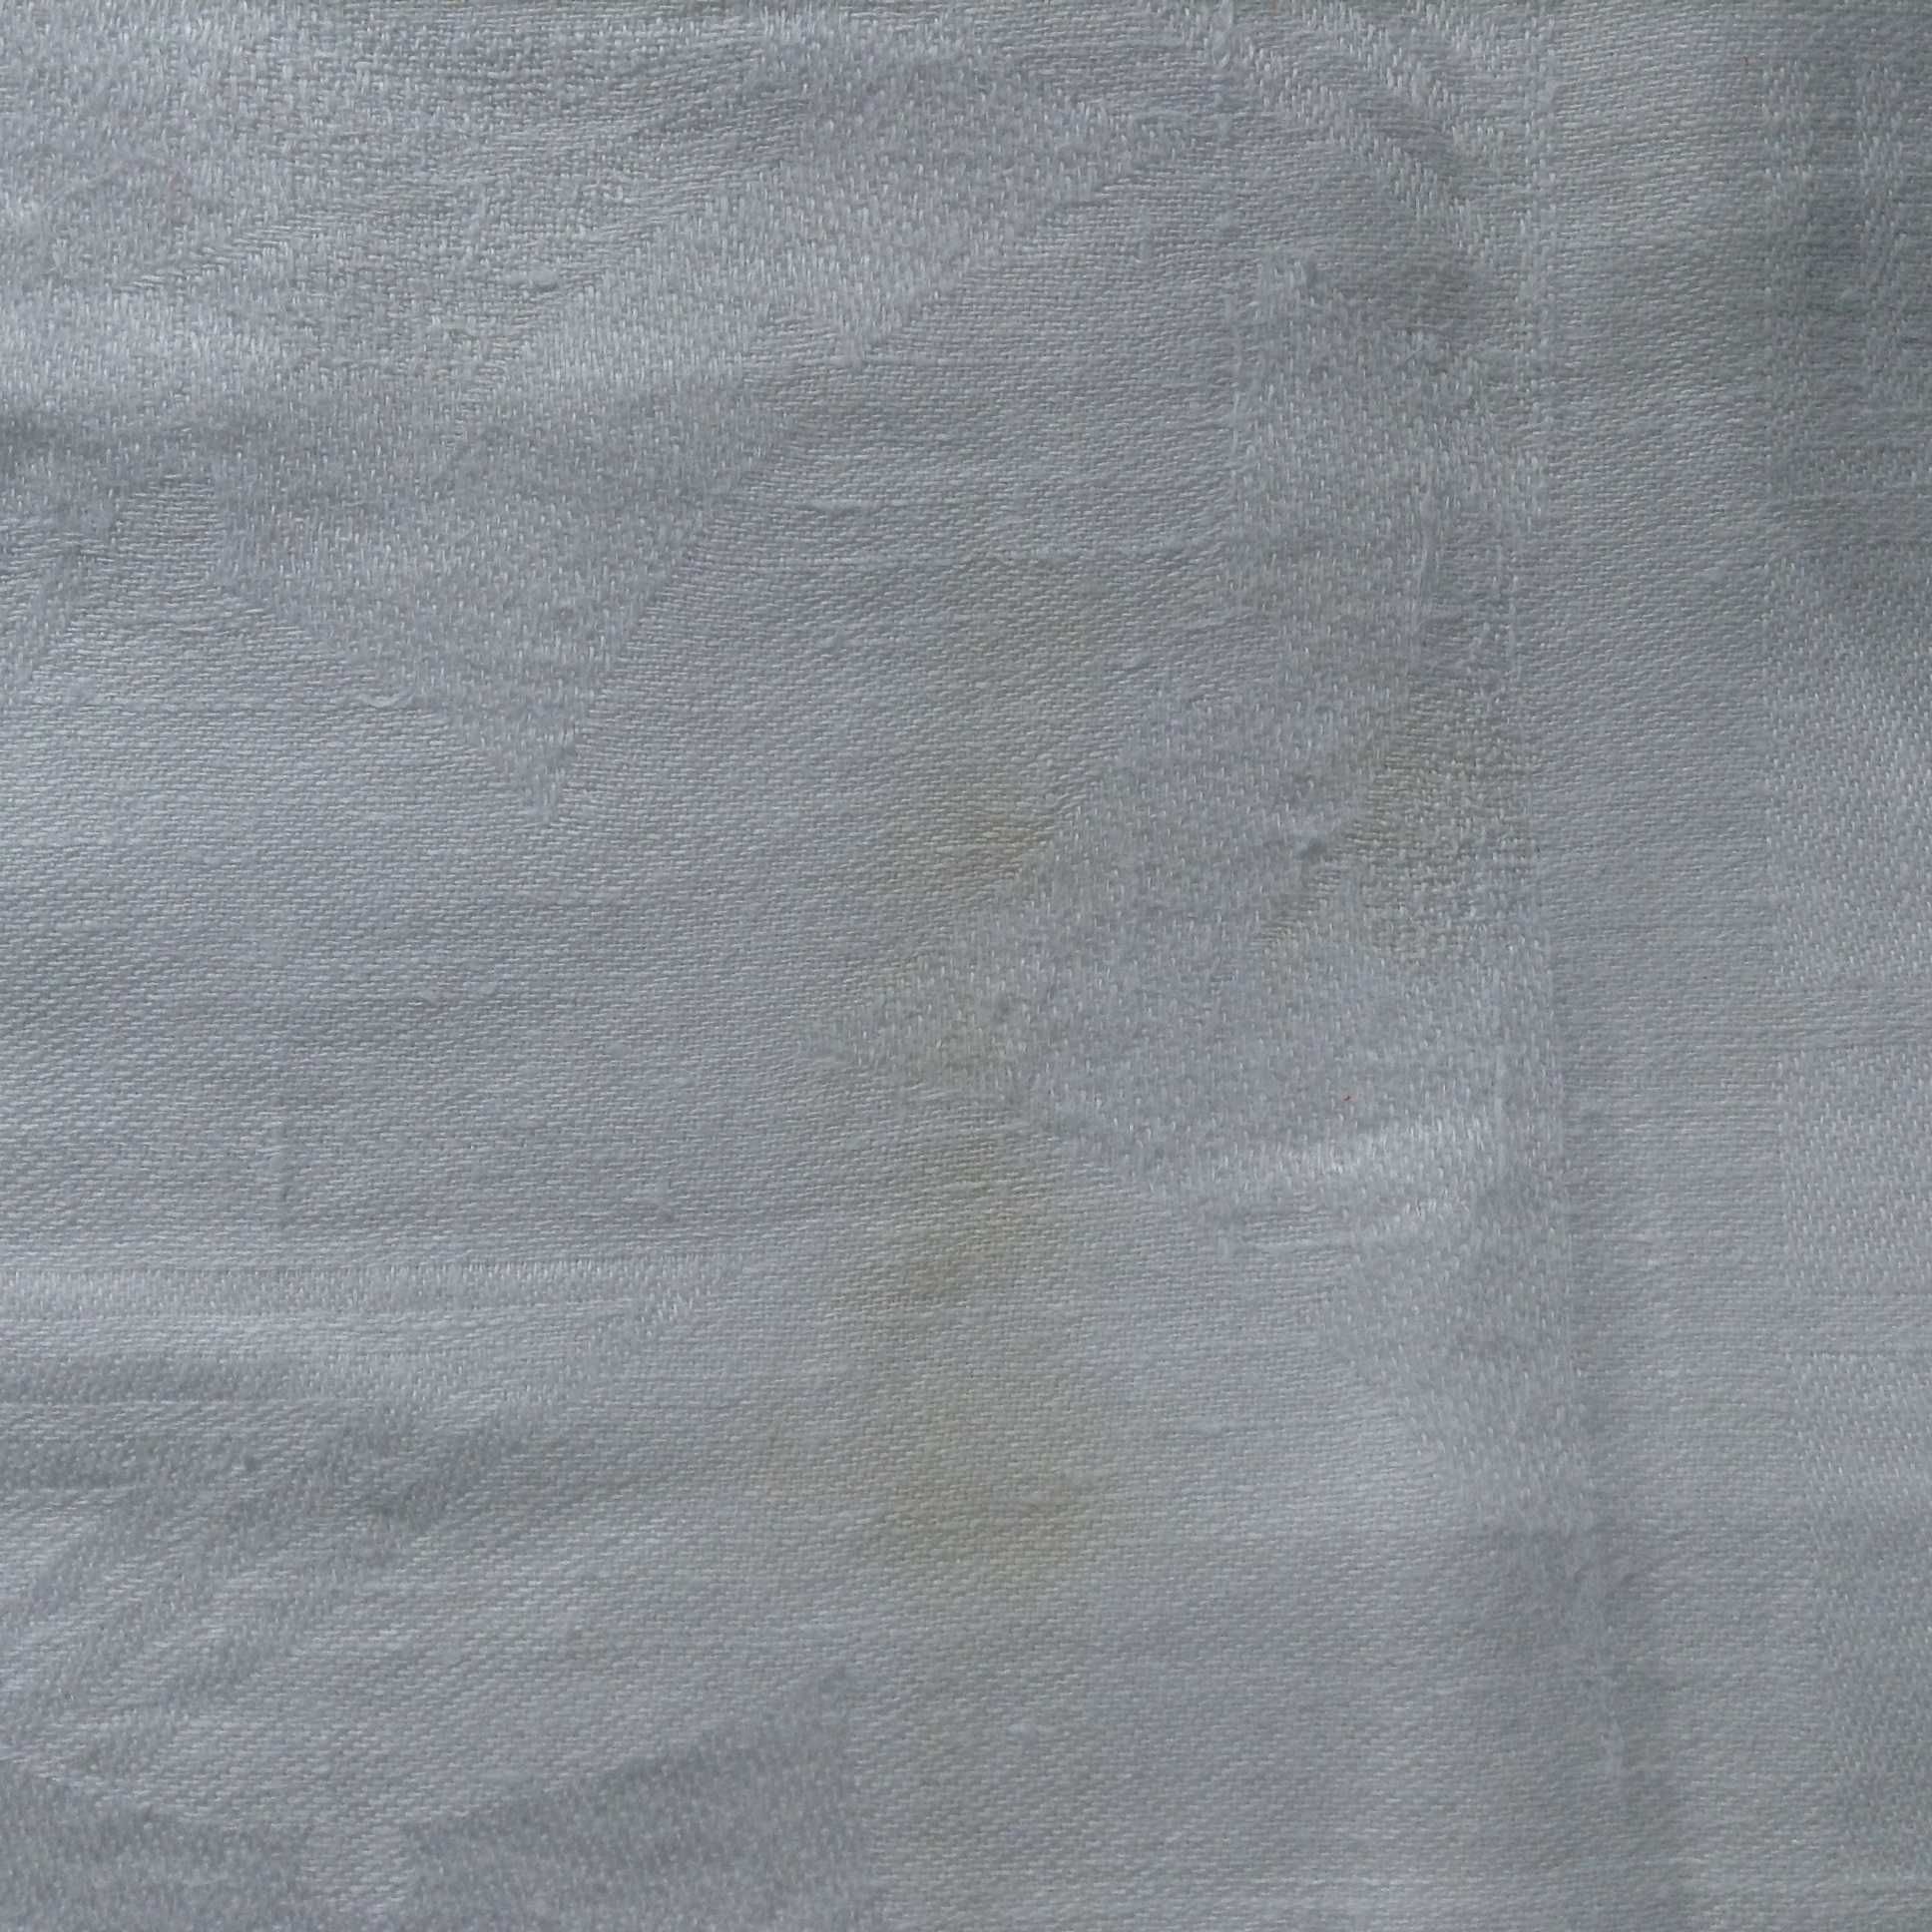 Большая белая льняная сервировочная скатерть, размер 170*200 см, б/у